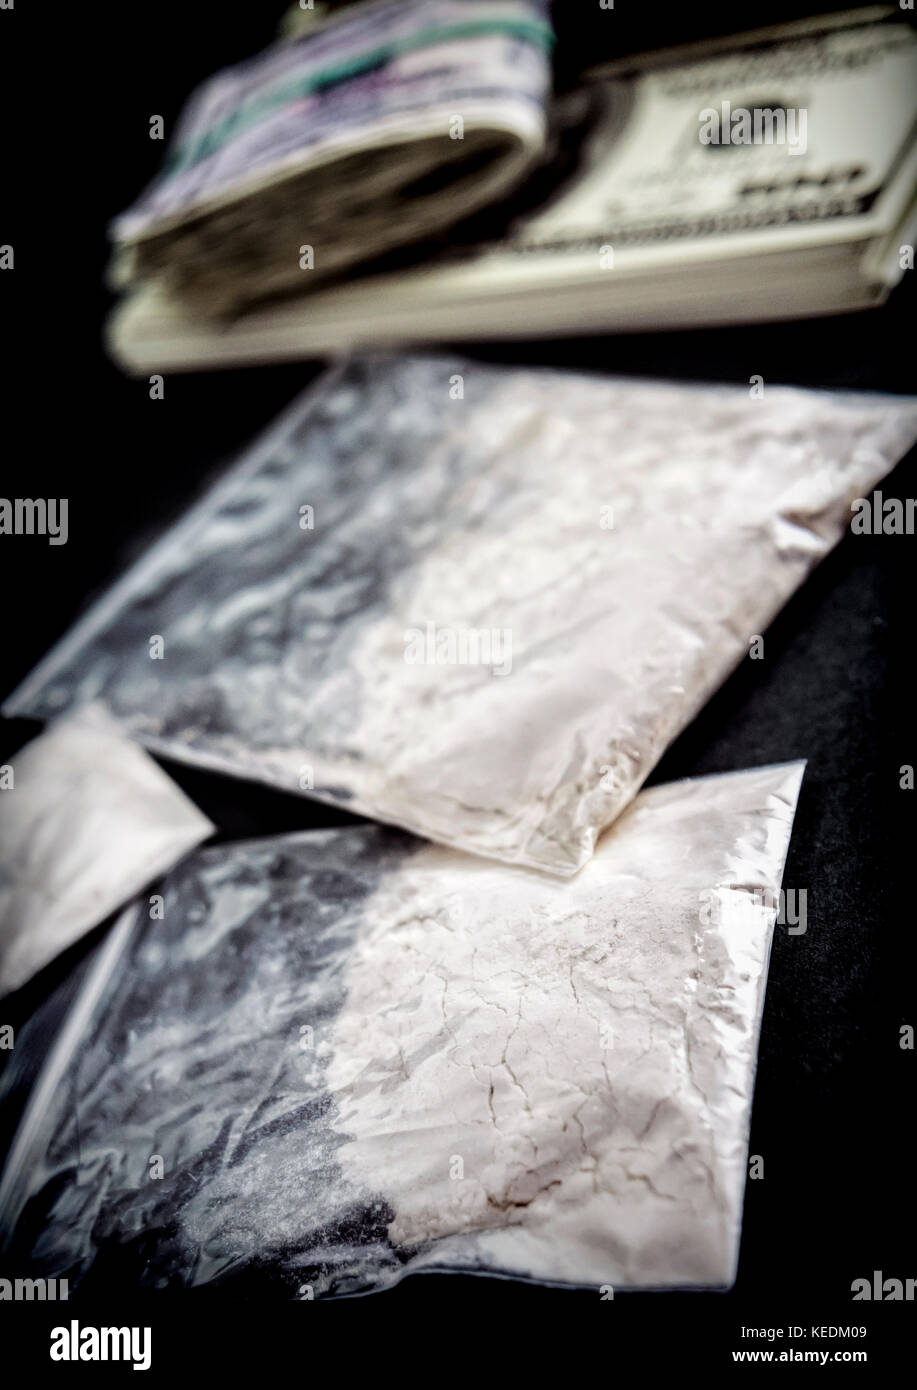 Droge Beutel zusammen mit einigen Dollarscheine, konzeptionelle Bild Stockfoto